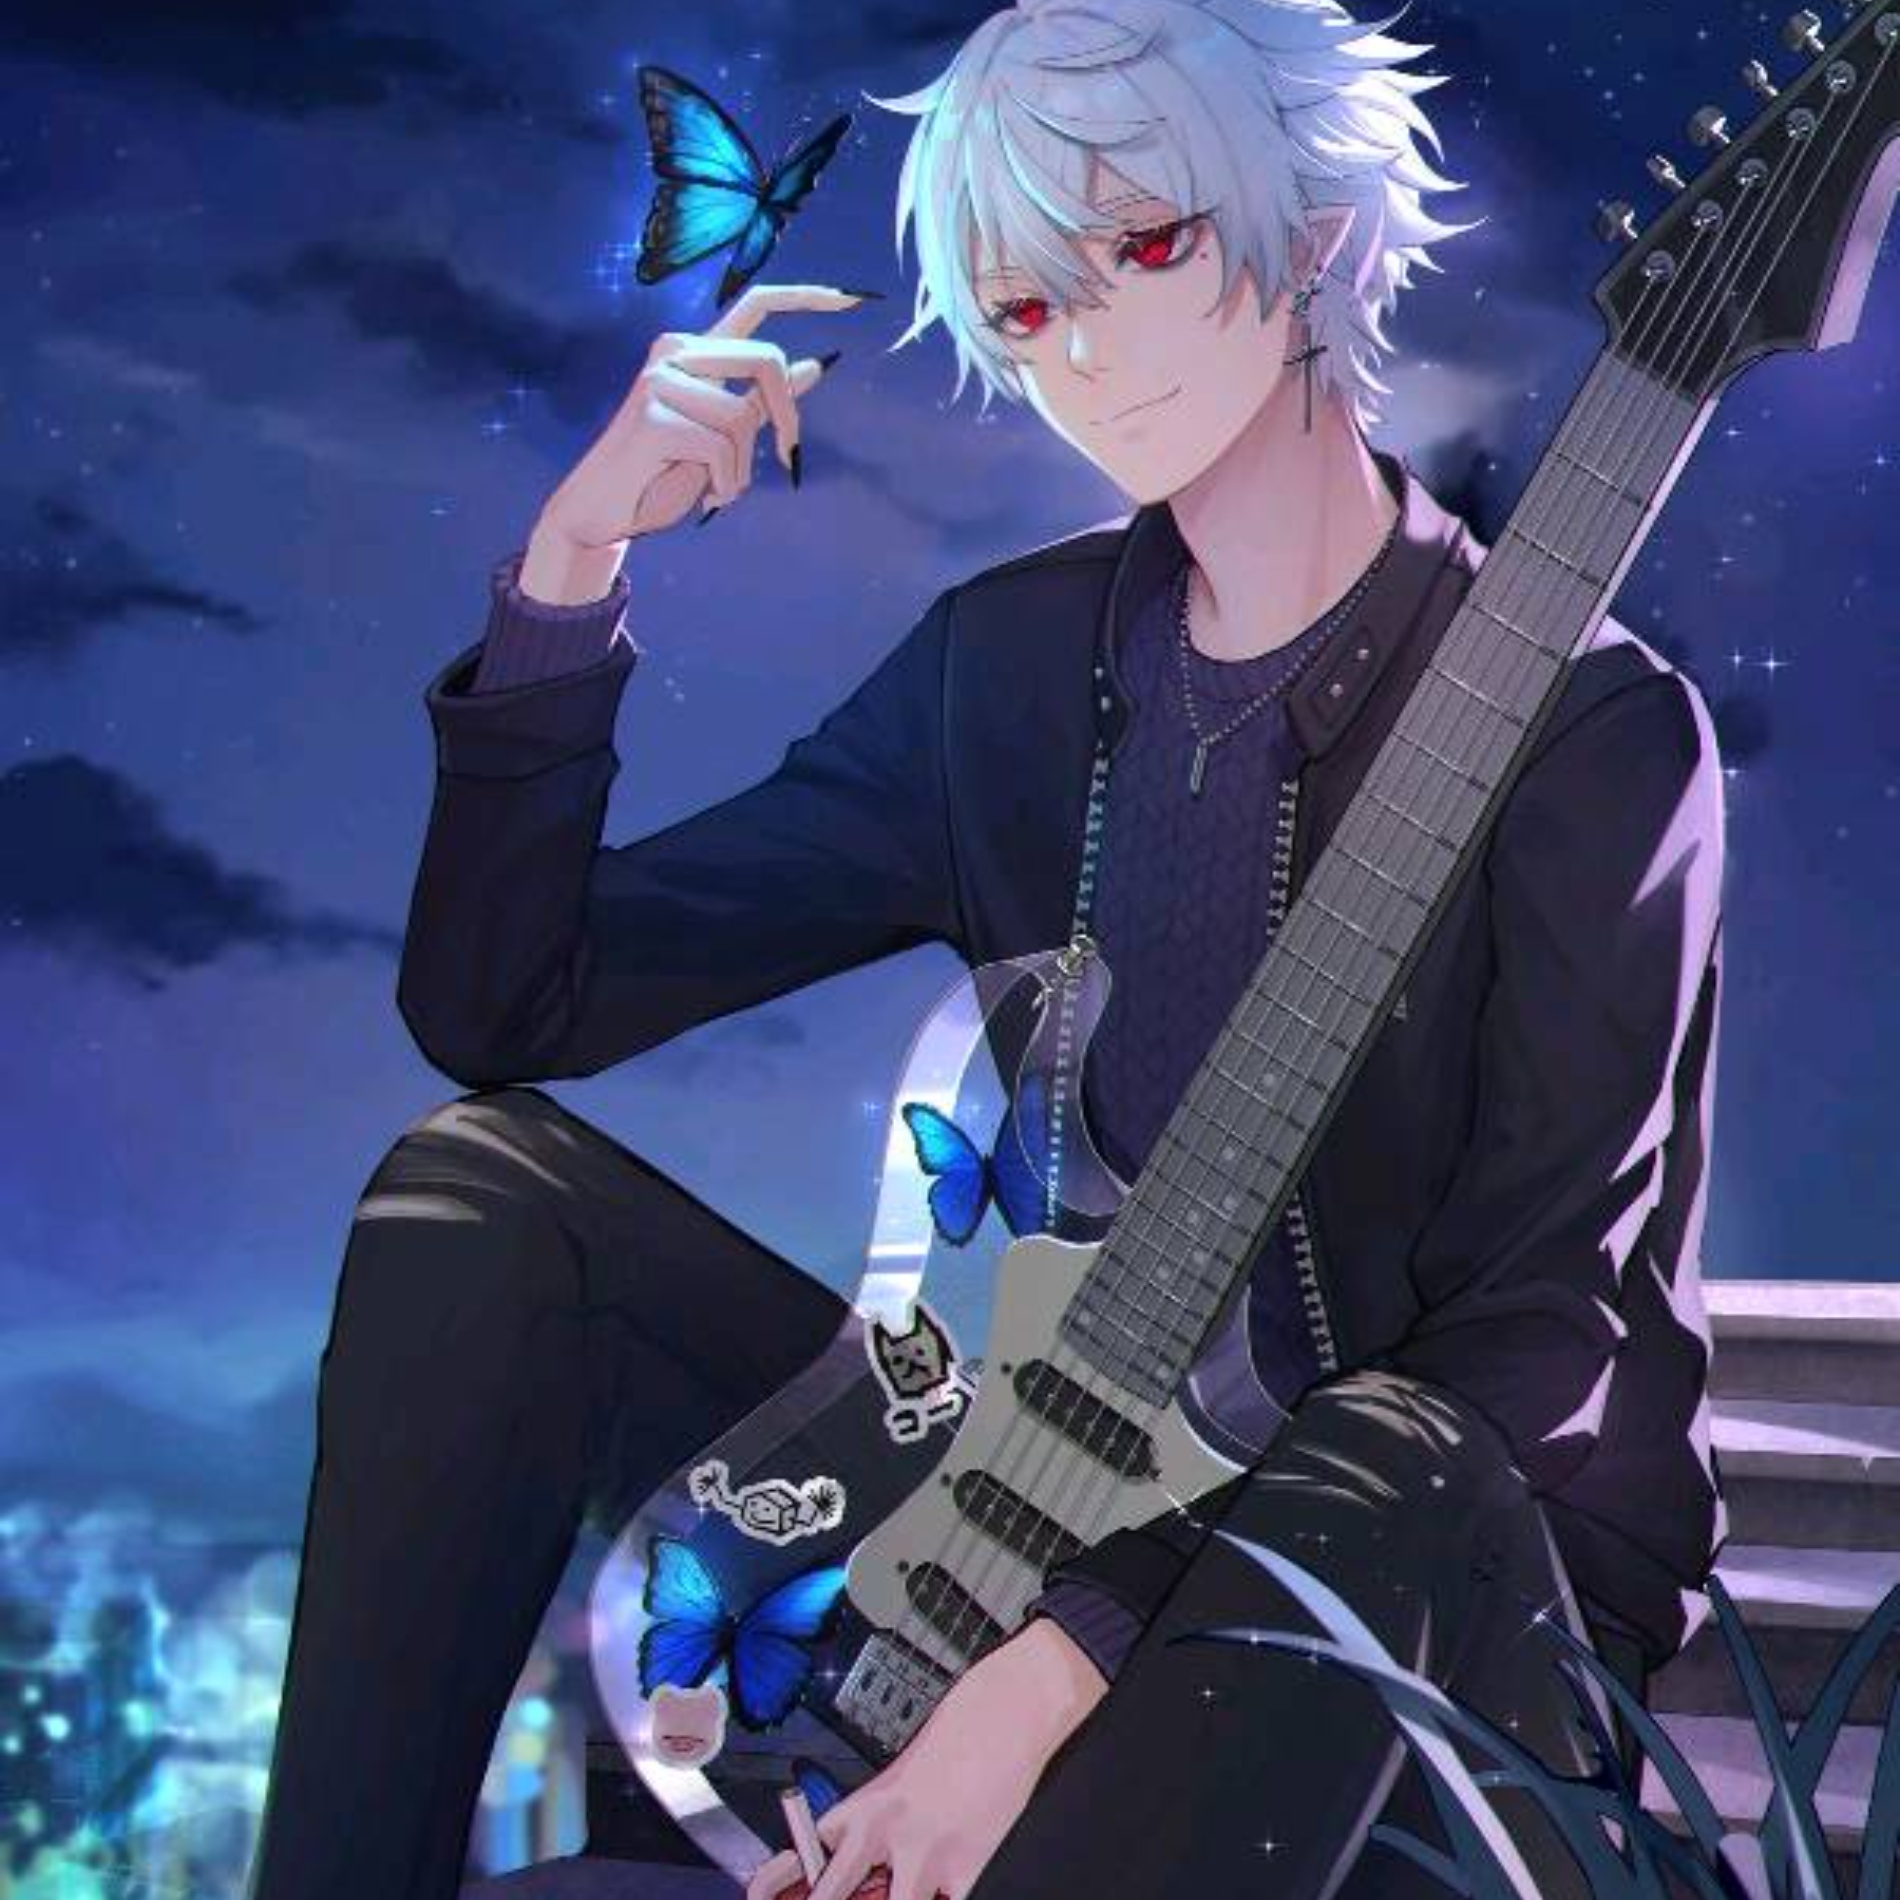 Anime Boy Guitar Pfp for Facebook